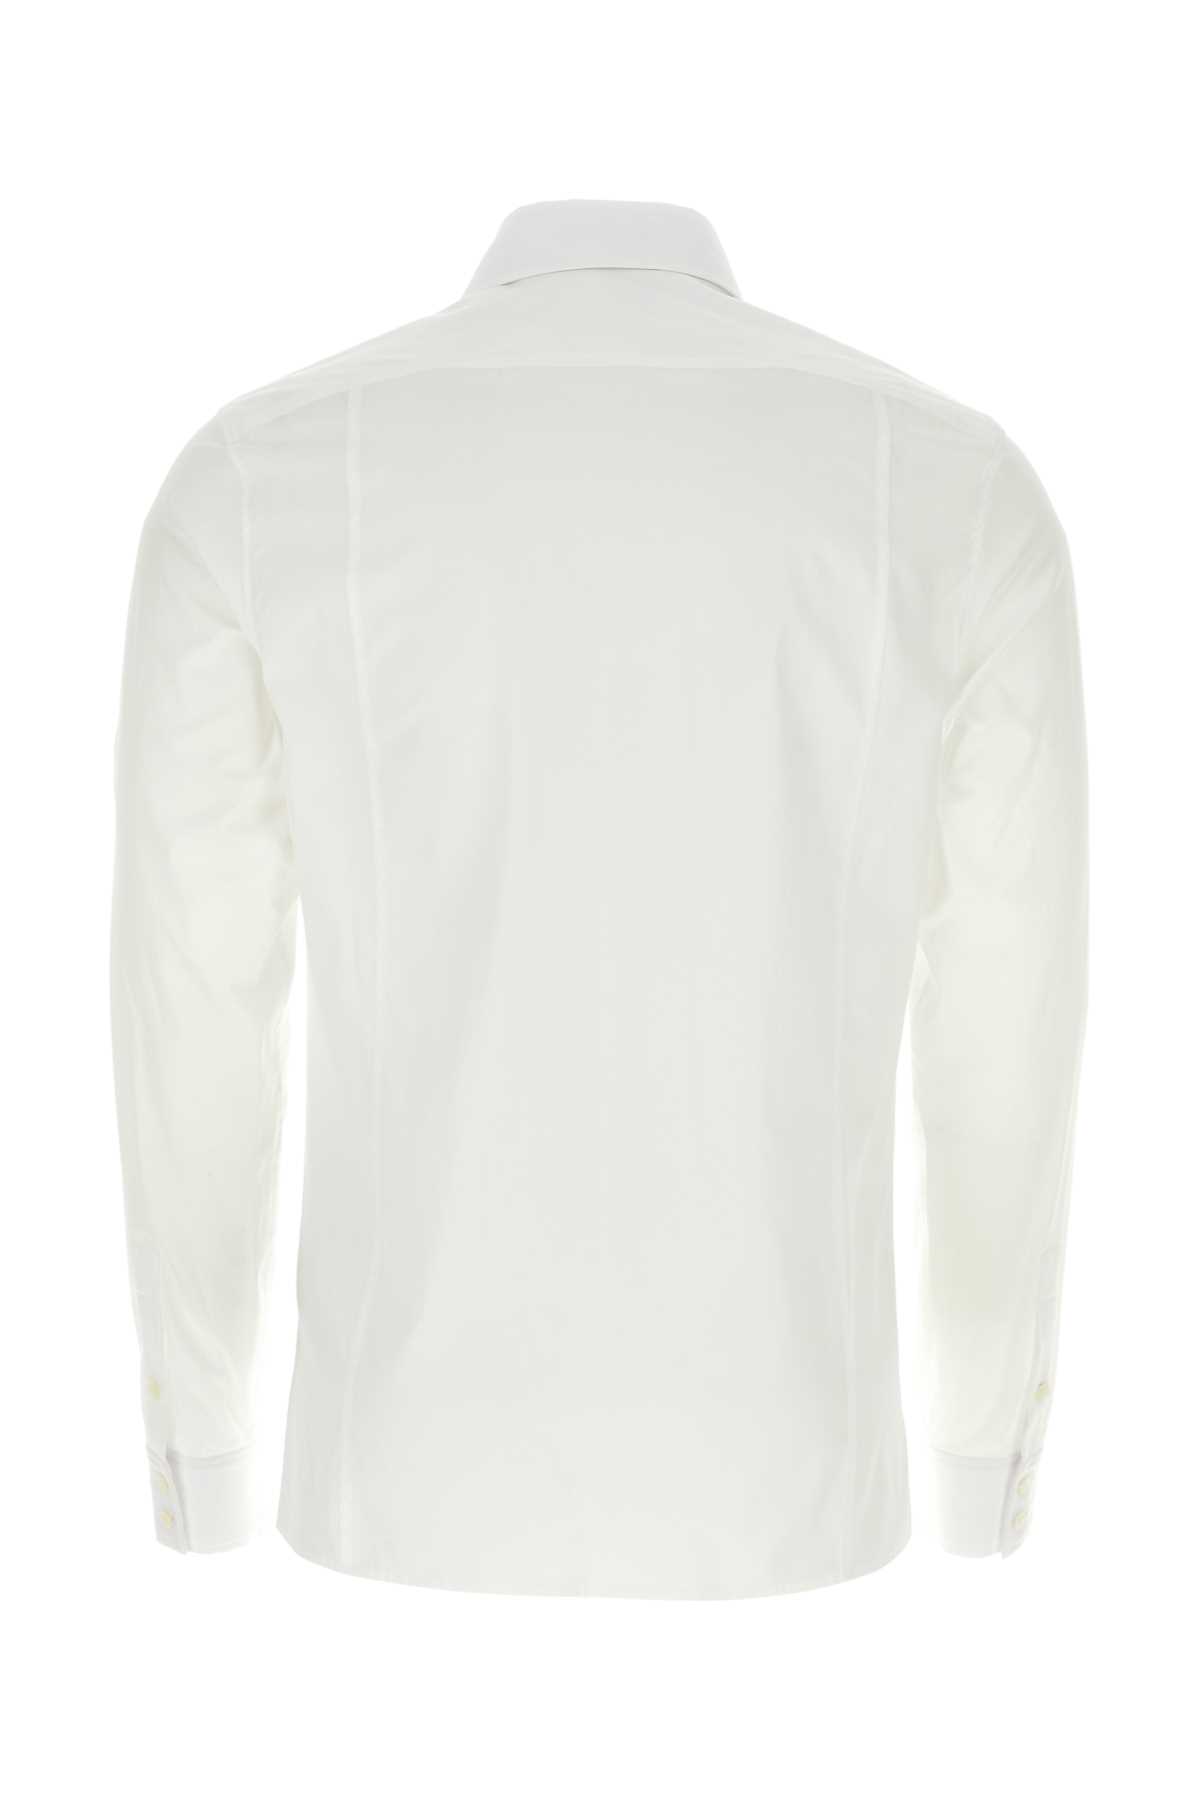 Balmain White Poplin Shirt In Blanc